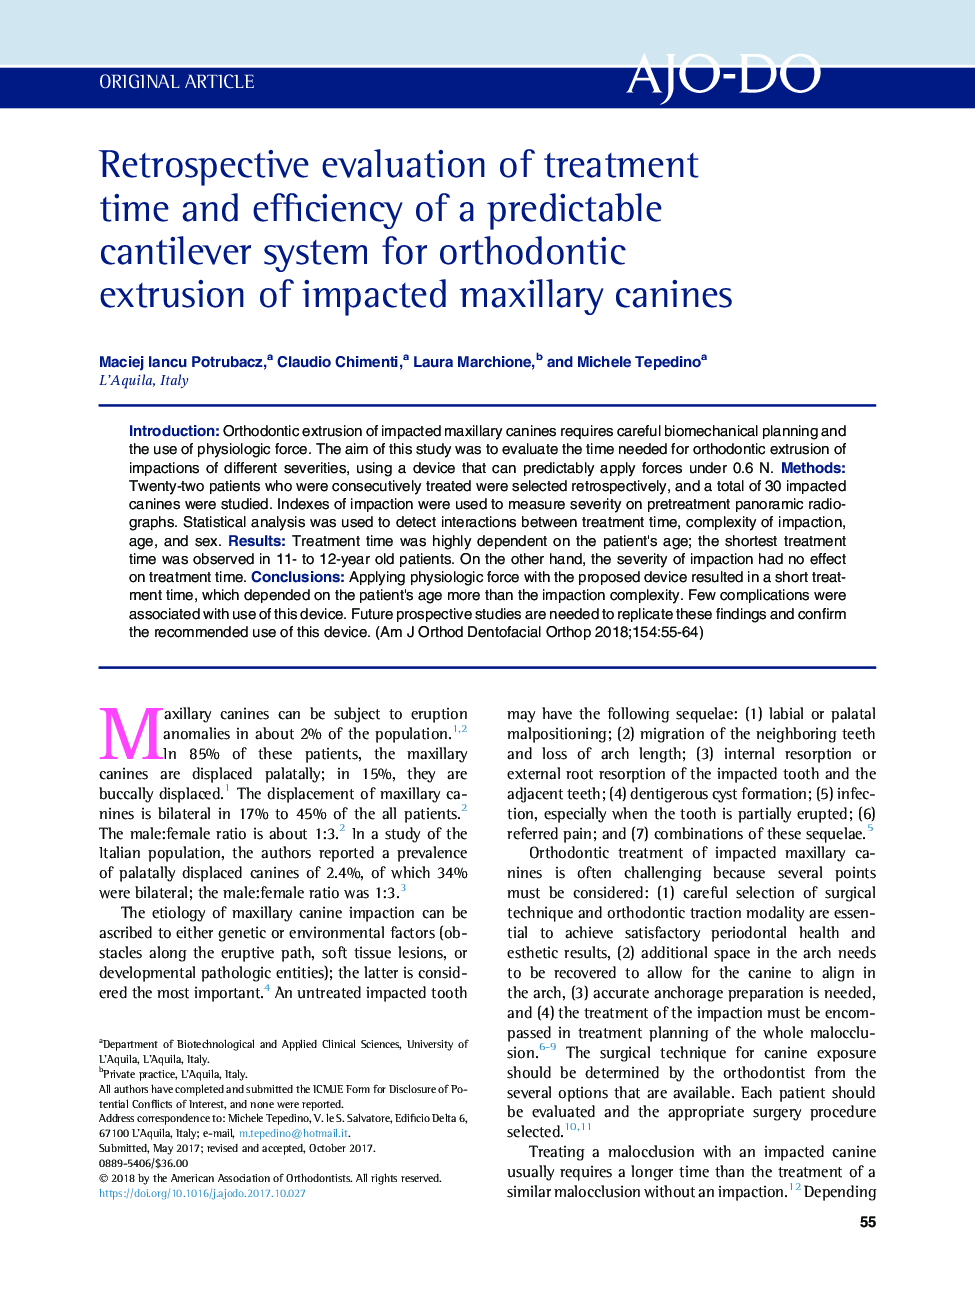 بررسی مجدد زمان درمان و کارایی یک سیستم کنتلی قابل پیش بینی برای اکستروژن ارتودنسی کانین های فک بالا 